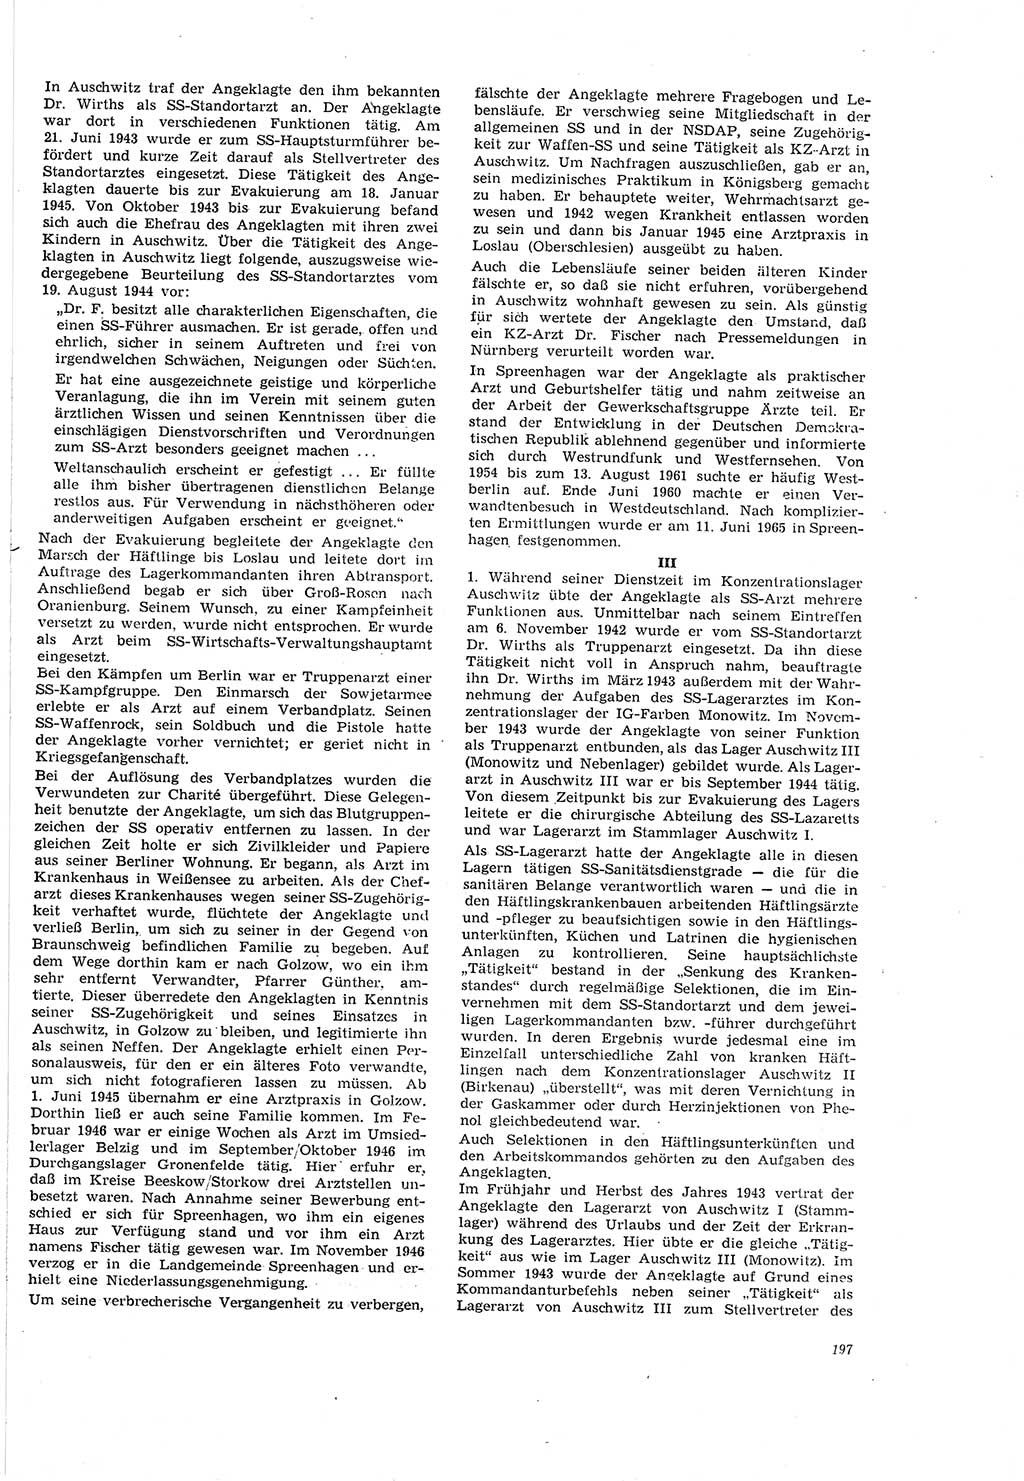 Neue Justiz (NJ), Zeitschrift für Recht und Rechtswissenschaft [Deutsche Demokratische Republik (DDR)], 20. Jahrgang 1966, Seite 197 (NJ DDR 1966, S. 197)